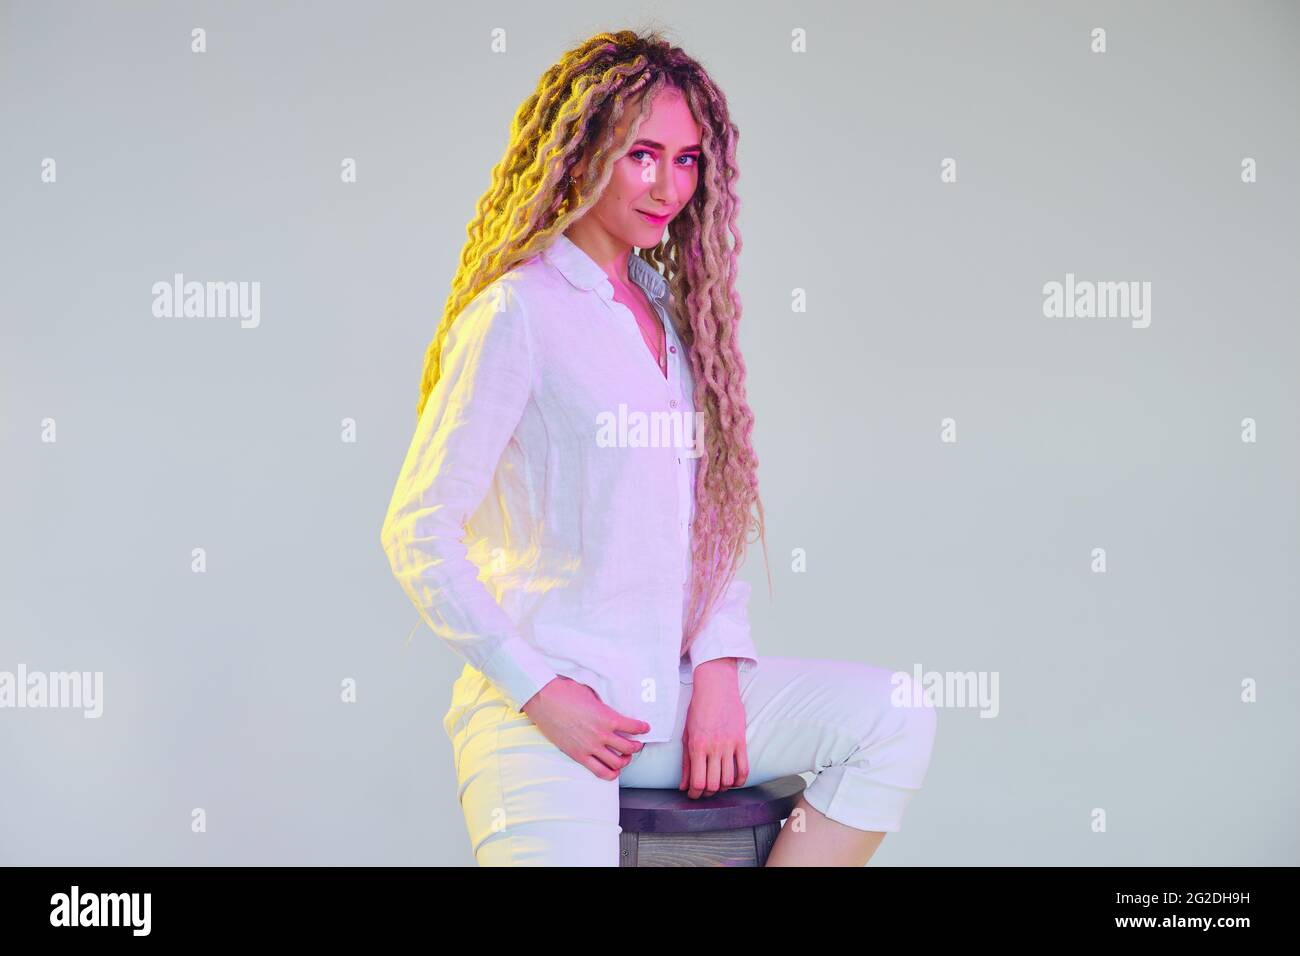 Knifflige Frau in weißer Bluse und Hose unter Neonlicht Stockfoto